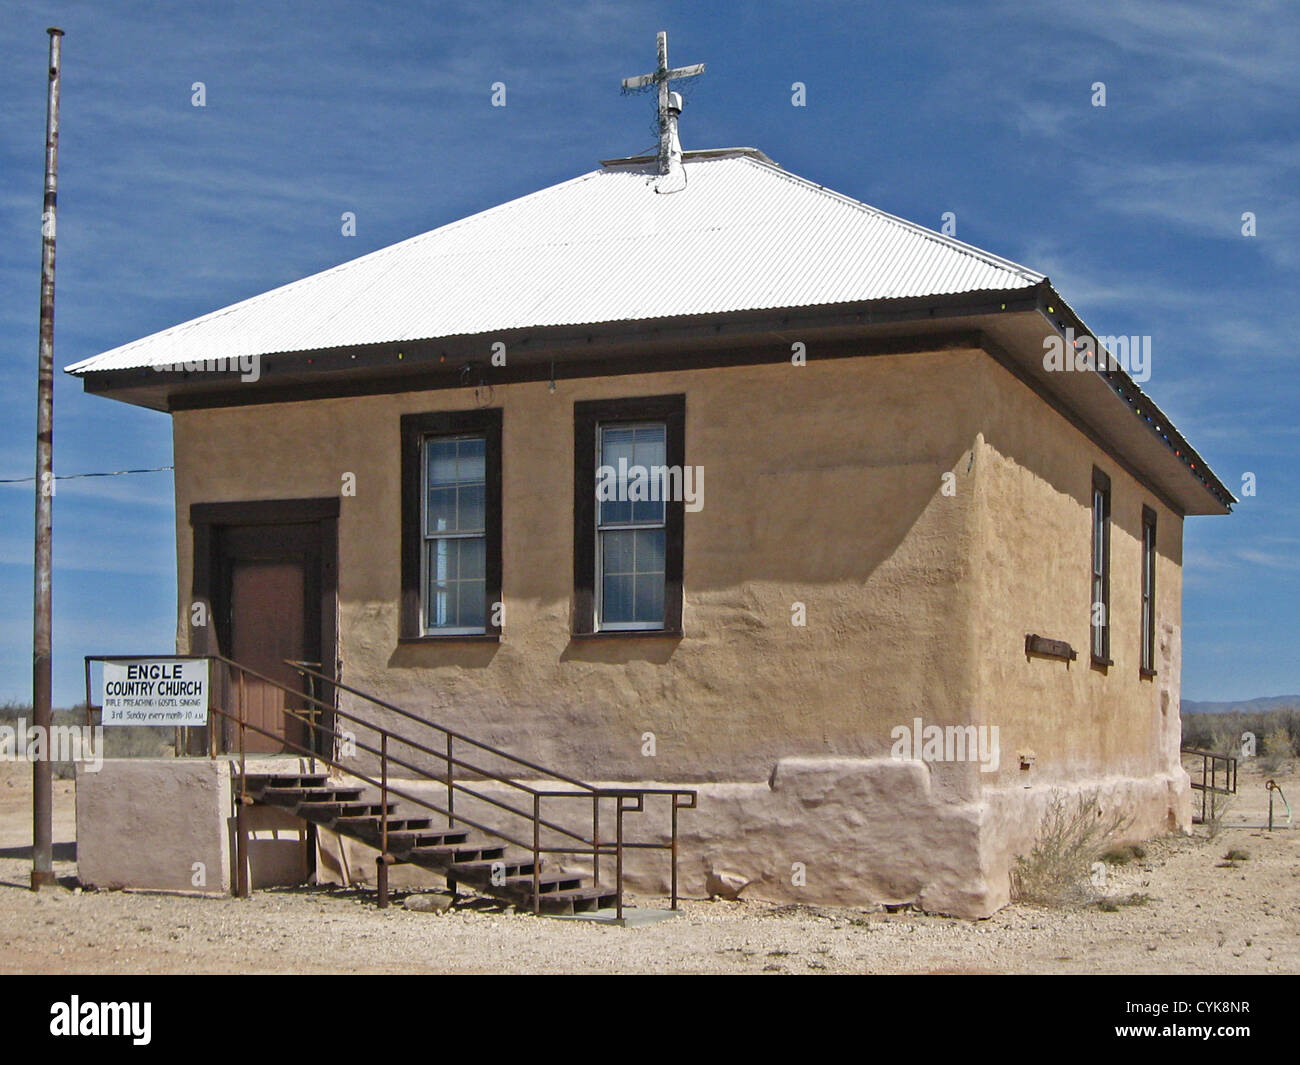 Engle Landkirche, einer alten Adobe-Kirche befindet sich in der Siedlung von Engle, New Mexico. Stockfoto